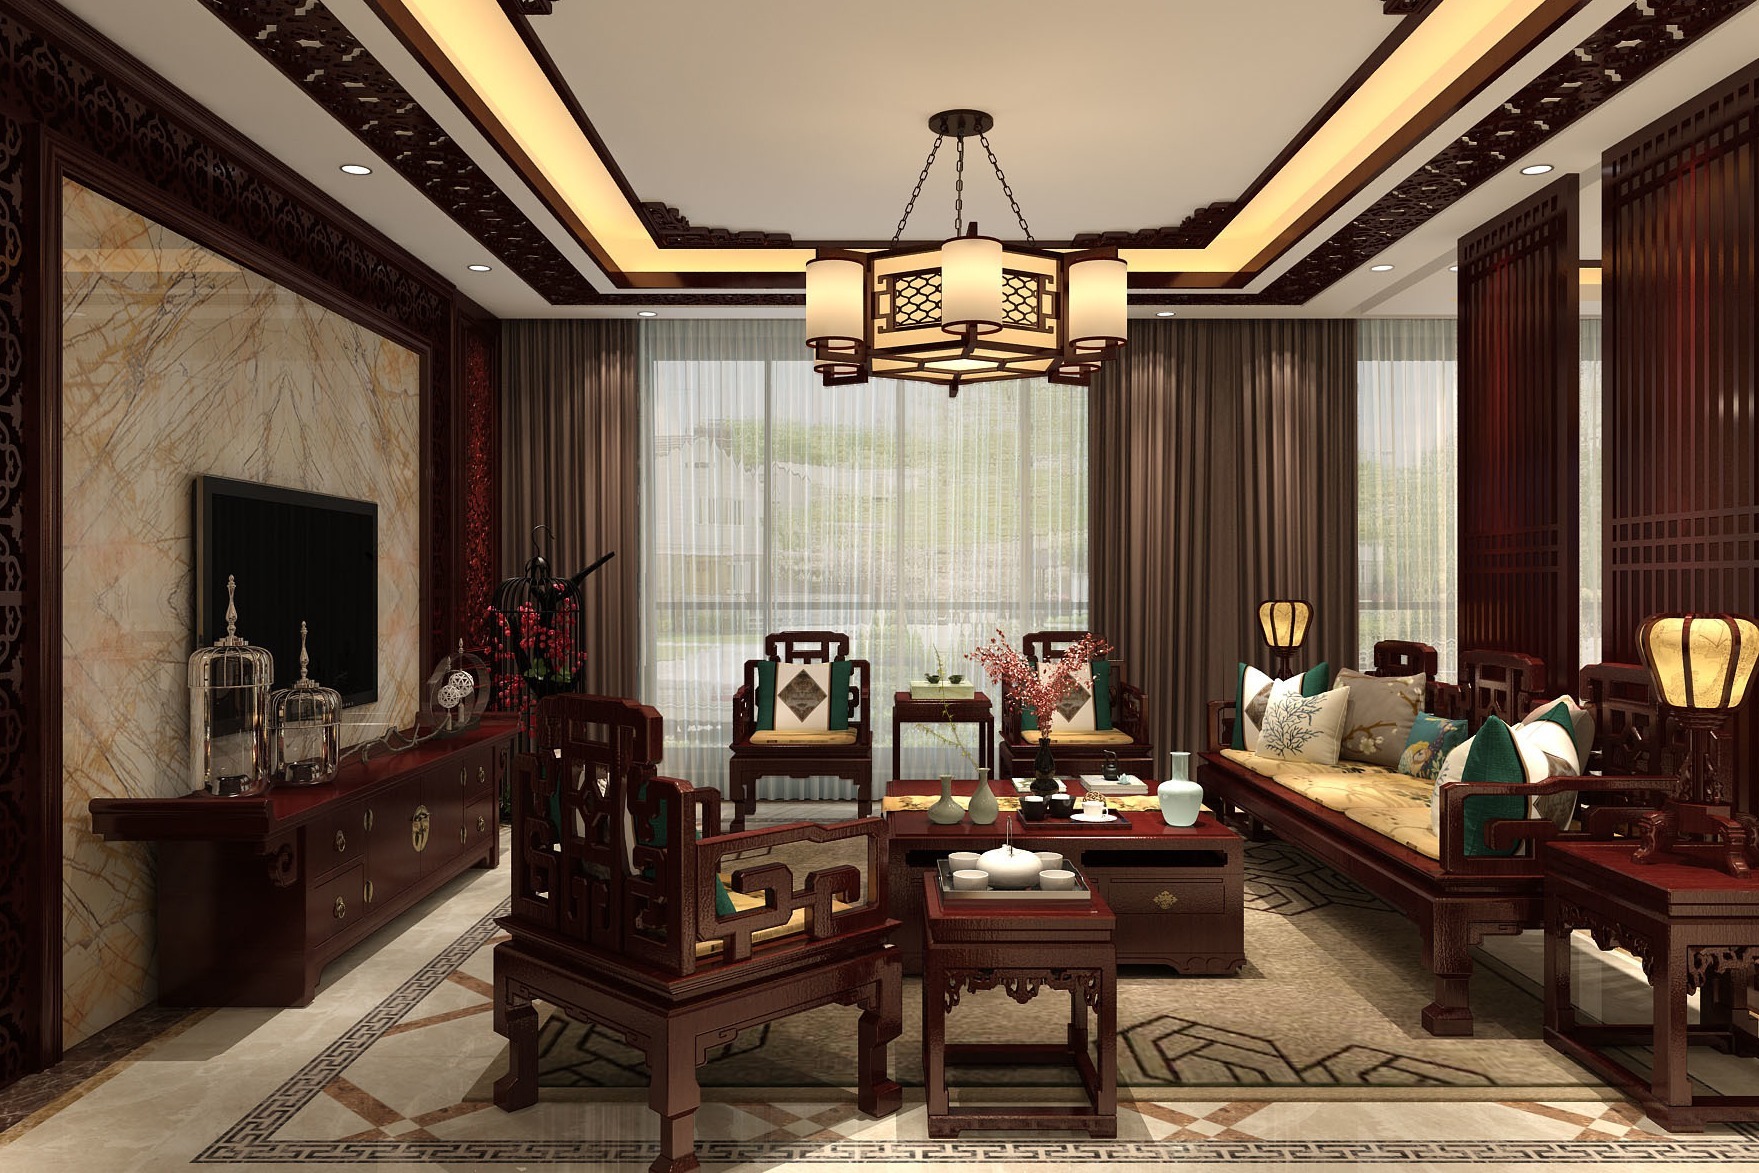 中式红木家具效果图大全2015图片 – 设计本装修效果图